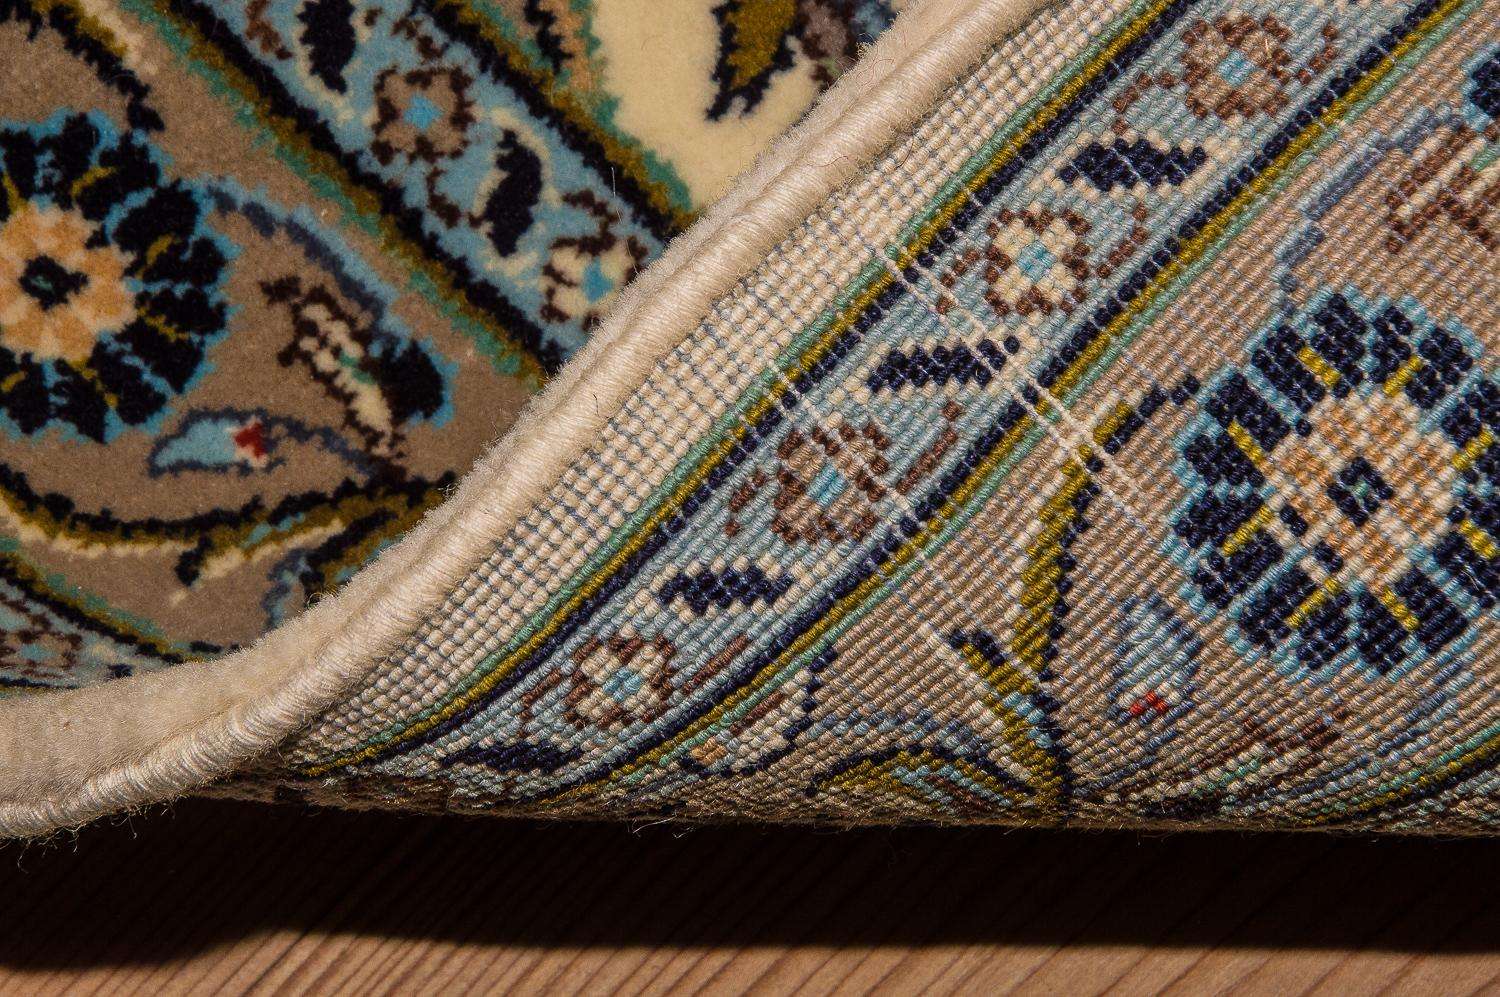 Persisk teppe - Keshan - 125 x 79 cm - beige